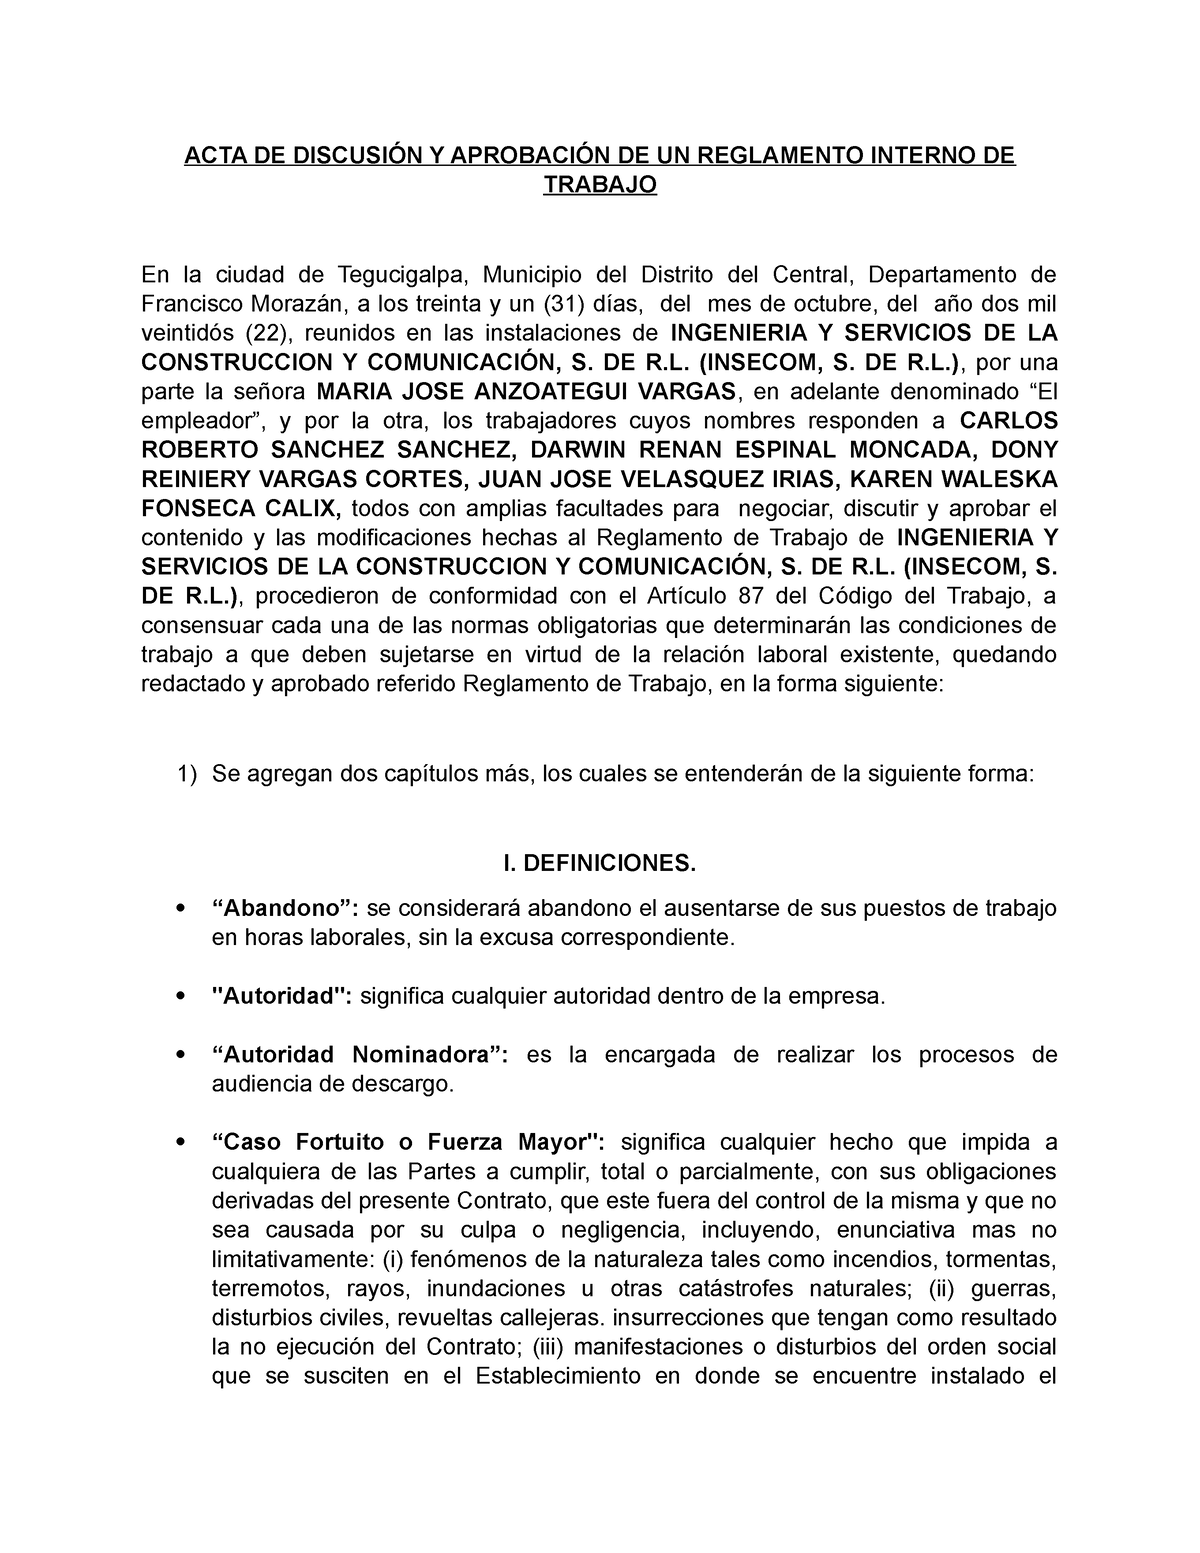 Acta Aprobacion De Reglamento Insecom Acta De DiscusiÓn Y AprobaciÓn De Un Reglamento Interno 2337